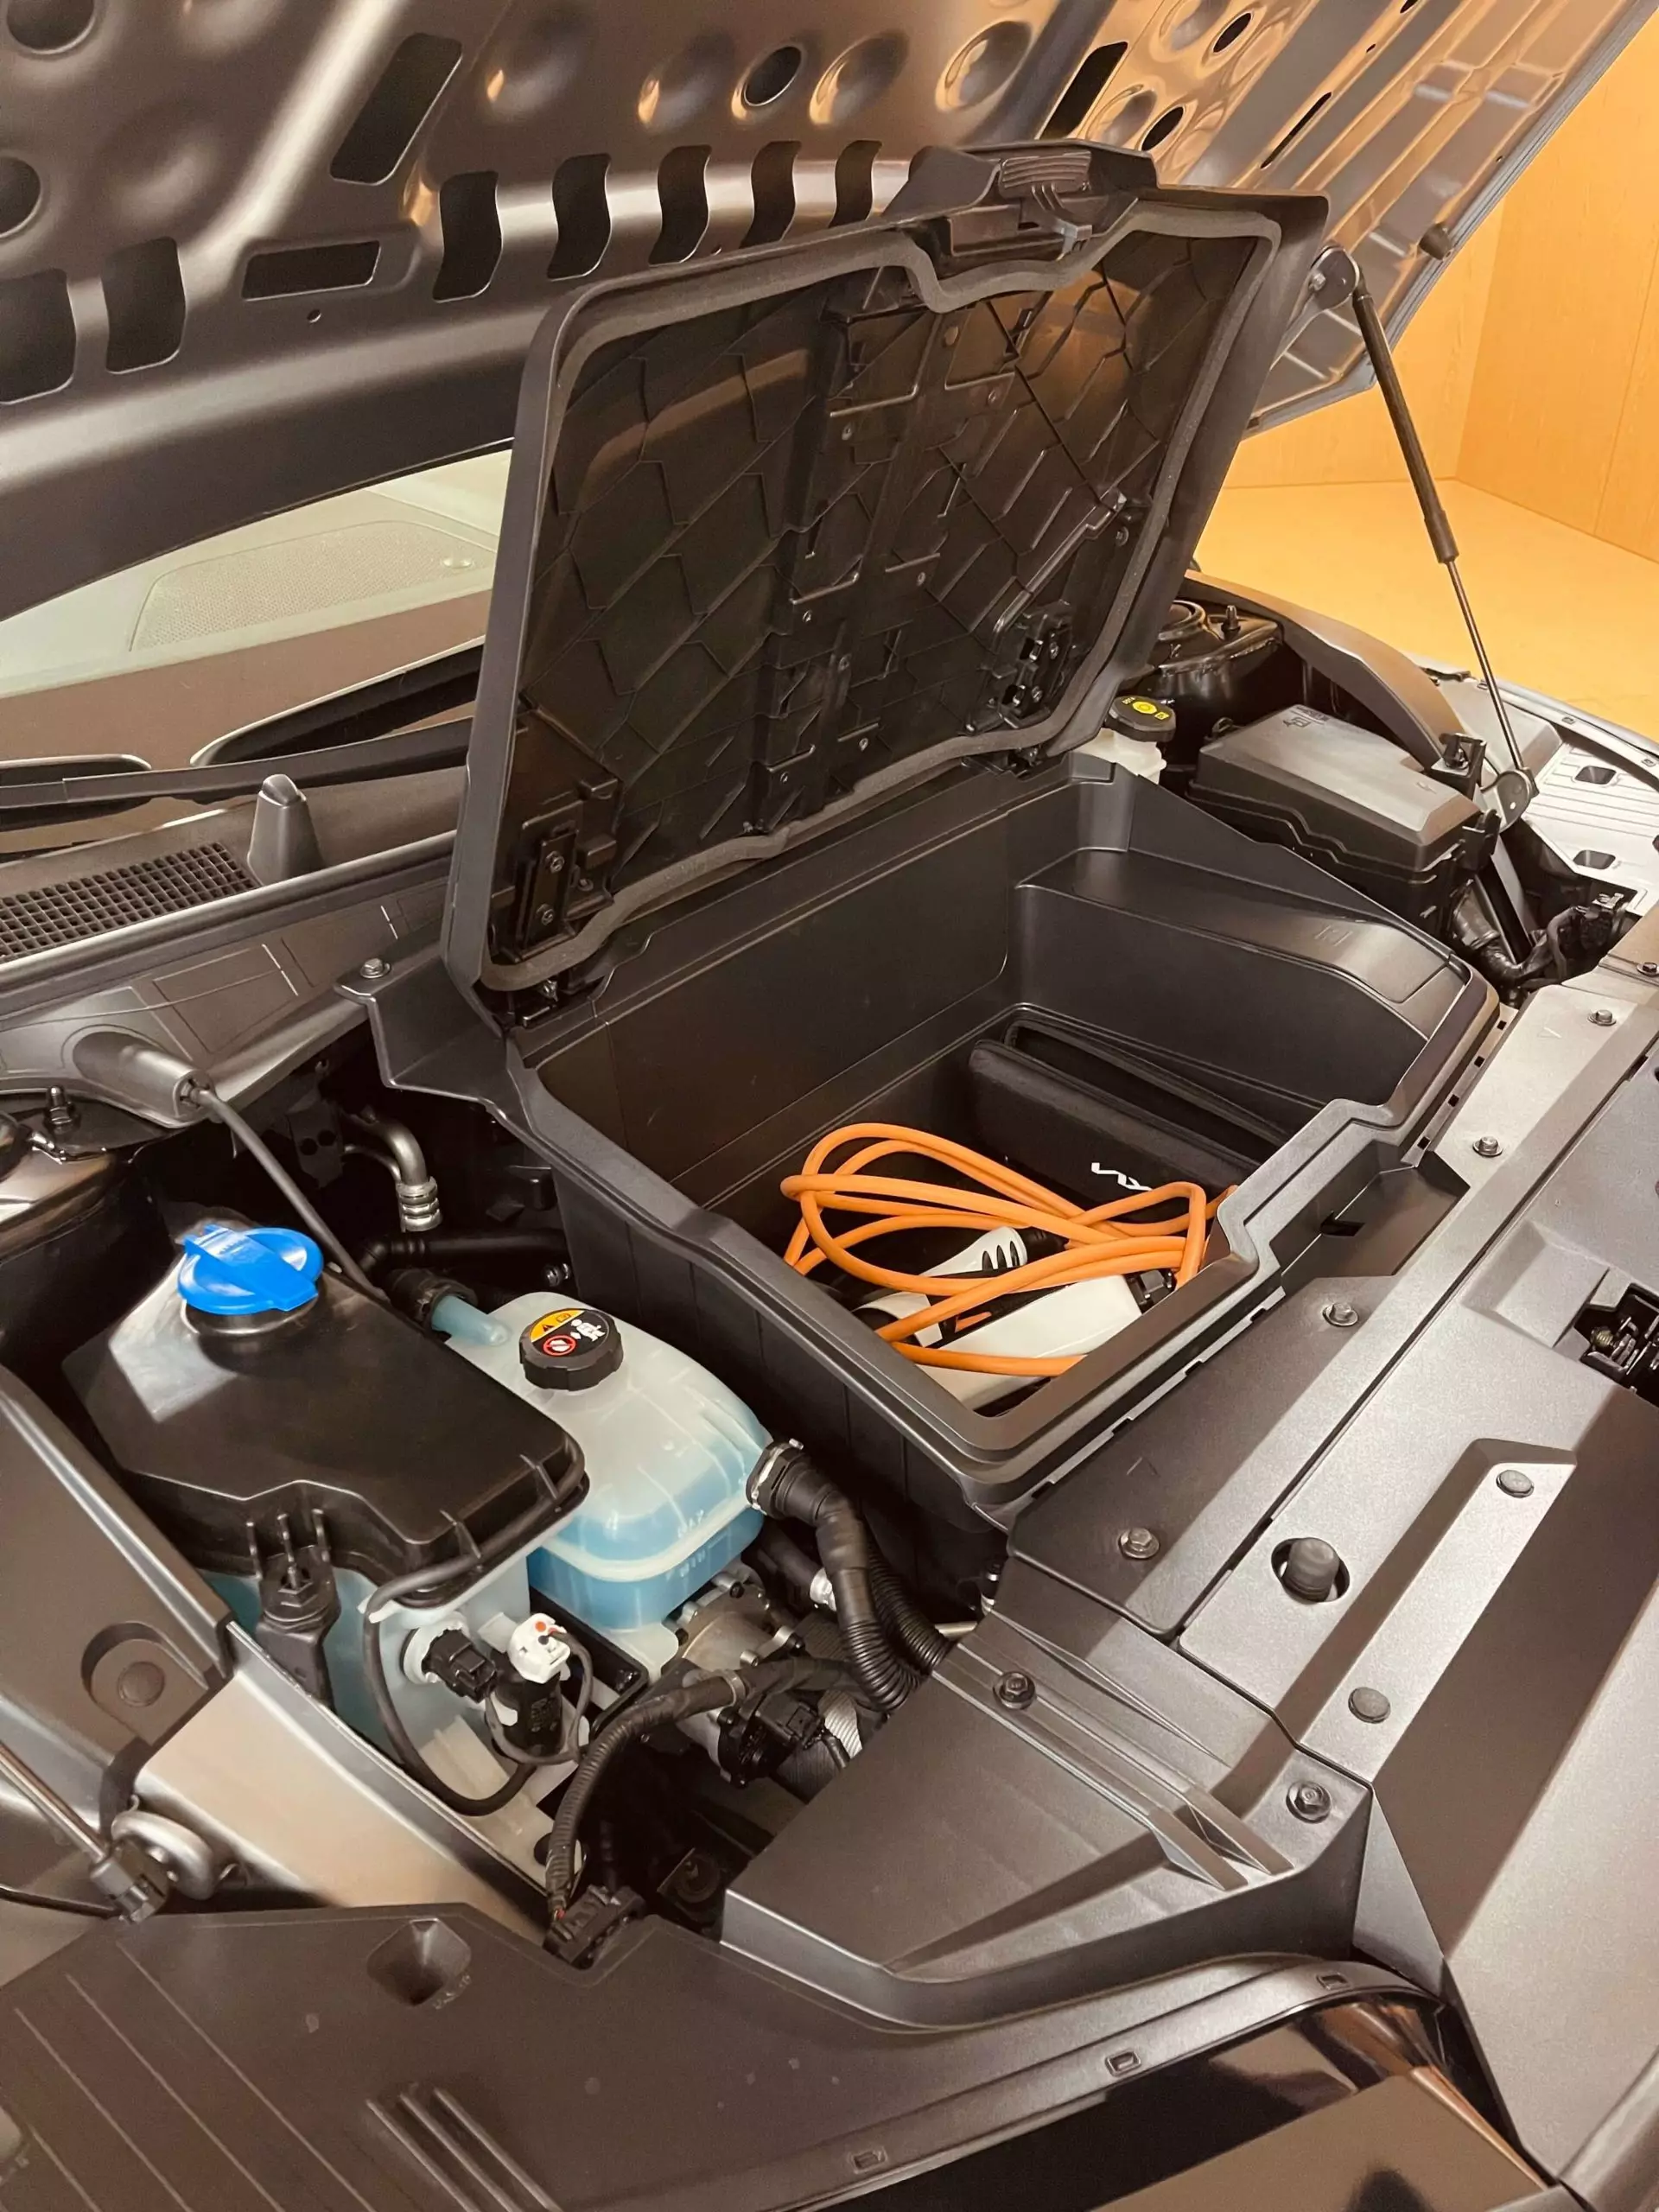 EV6 ट्रंक में 520 लीटर क्षमता प्रदान करता है, जिसमें फ्रंट हुड के तहत एक और 52 लीटर जोड़ा जाता है (या 4×4 संस्करण में 20 लीटर, क्योंकि सामने एक दूसरी इलेक्ट्रिक मोटर है)।